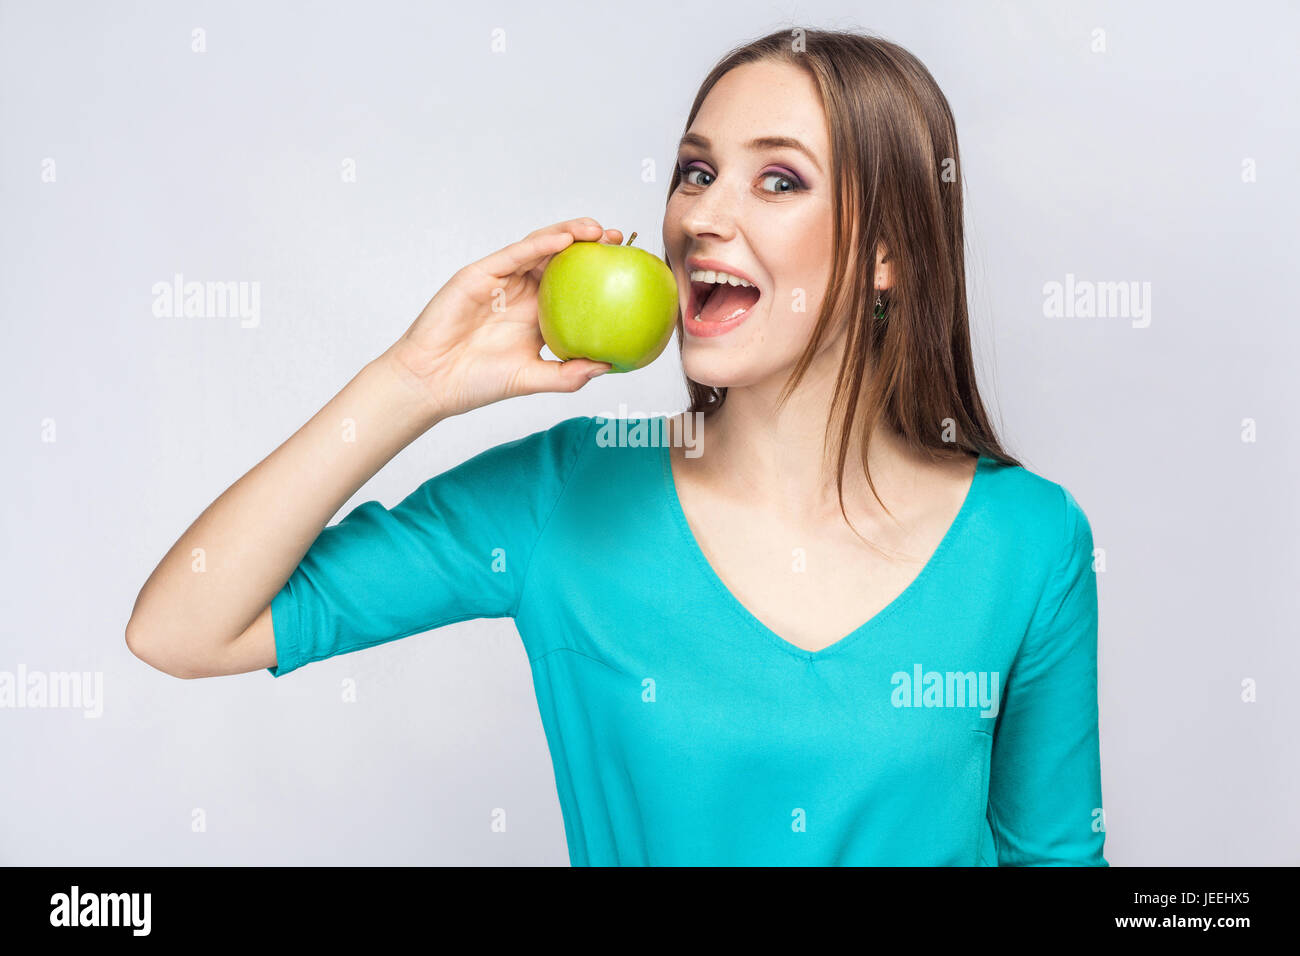 Junge schöne Frau mit Sommersprossen und grünes Kleid hält Apfel und Essen, Blick in die Kamera. Studioaufnahme, isoliert auf hellgrauen Hintergrund. Stockfoto